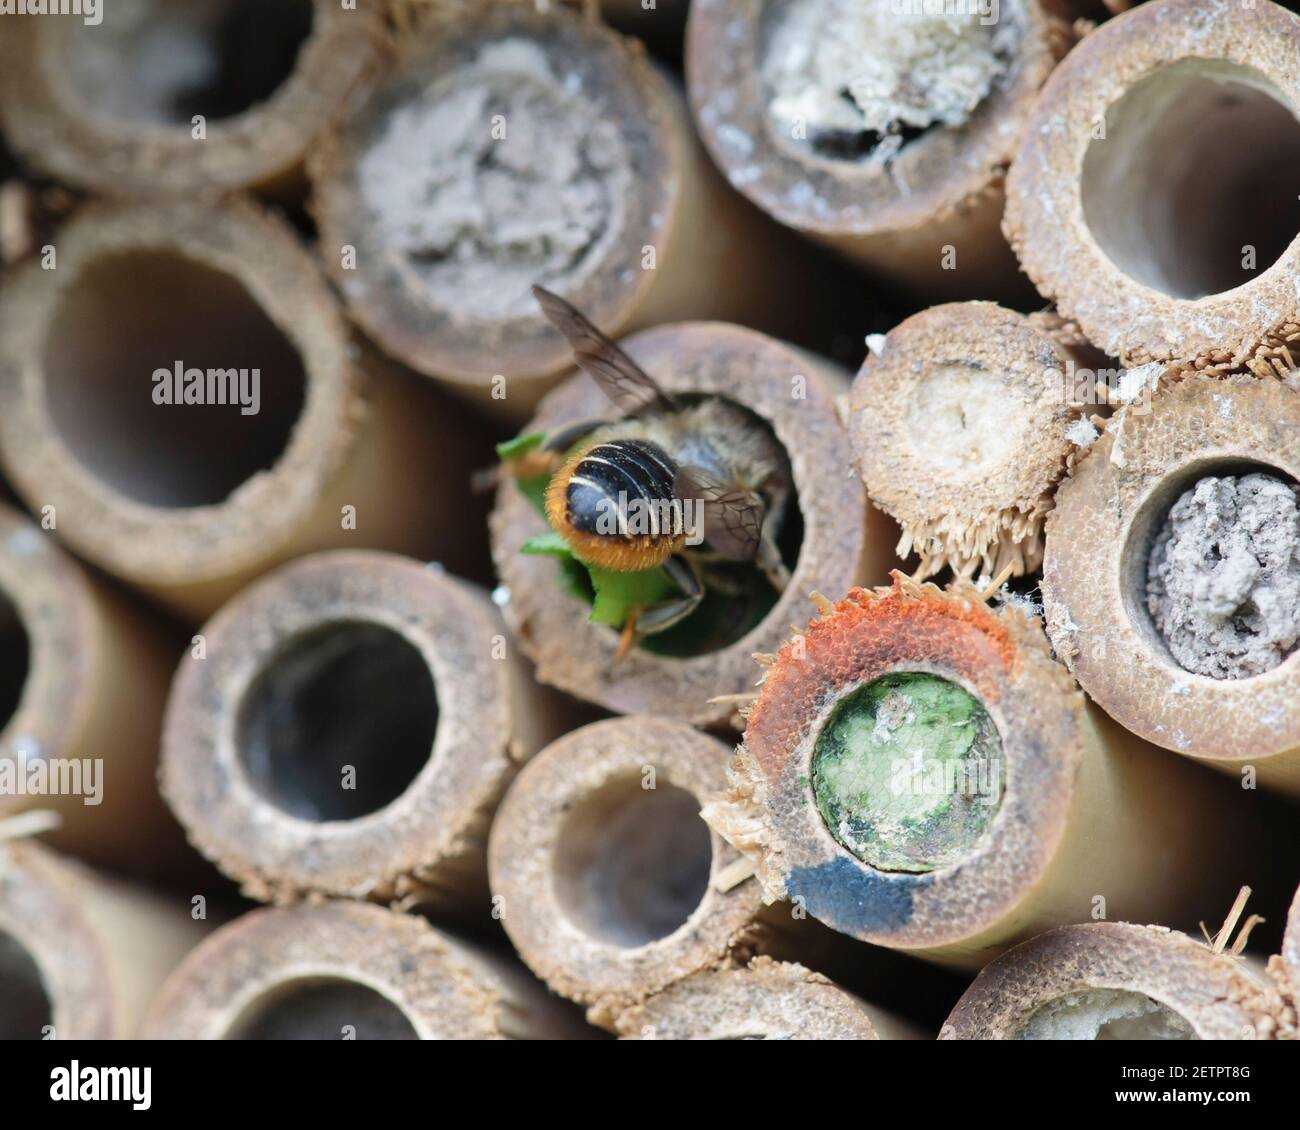 Ape solitaria, Megachile che organizza frammenti di foglie nel suo nido in hotel di api Foto Stock